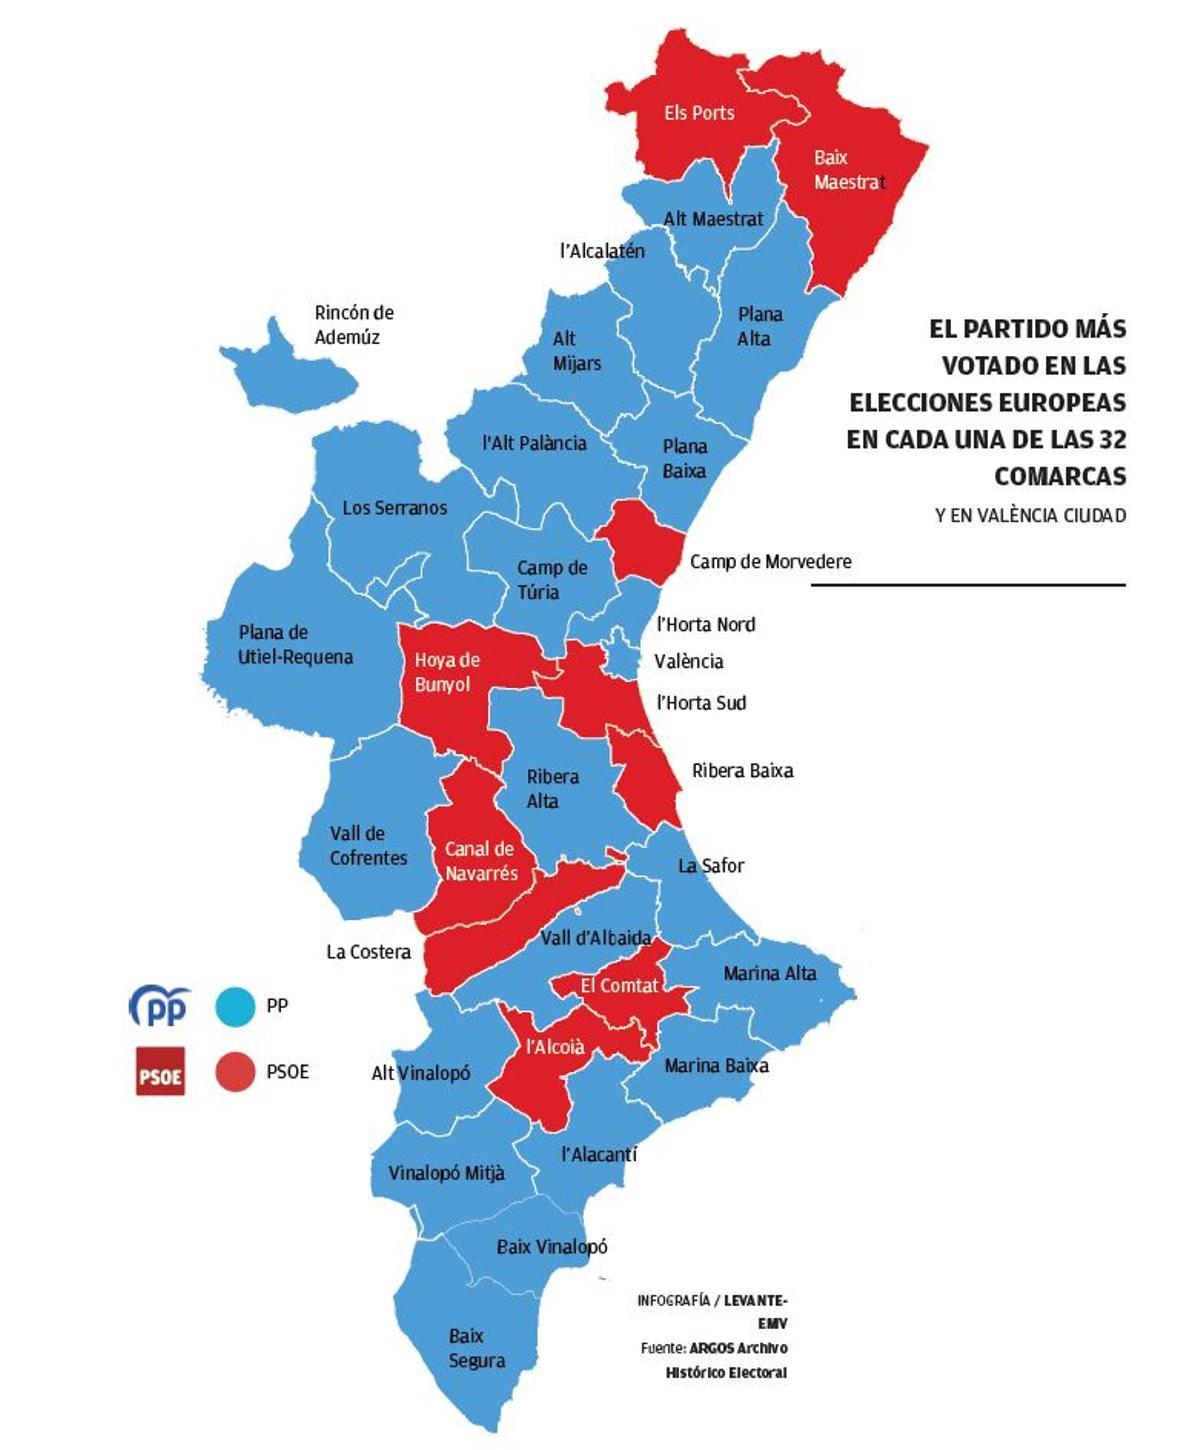 Mapa con el partido más votado este 9 de junio en cada comarca.